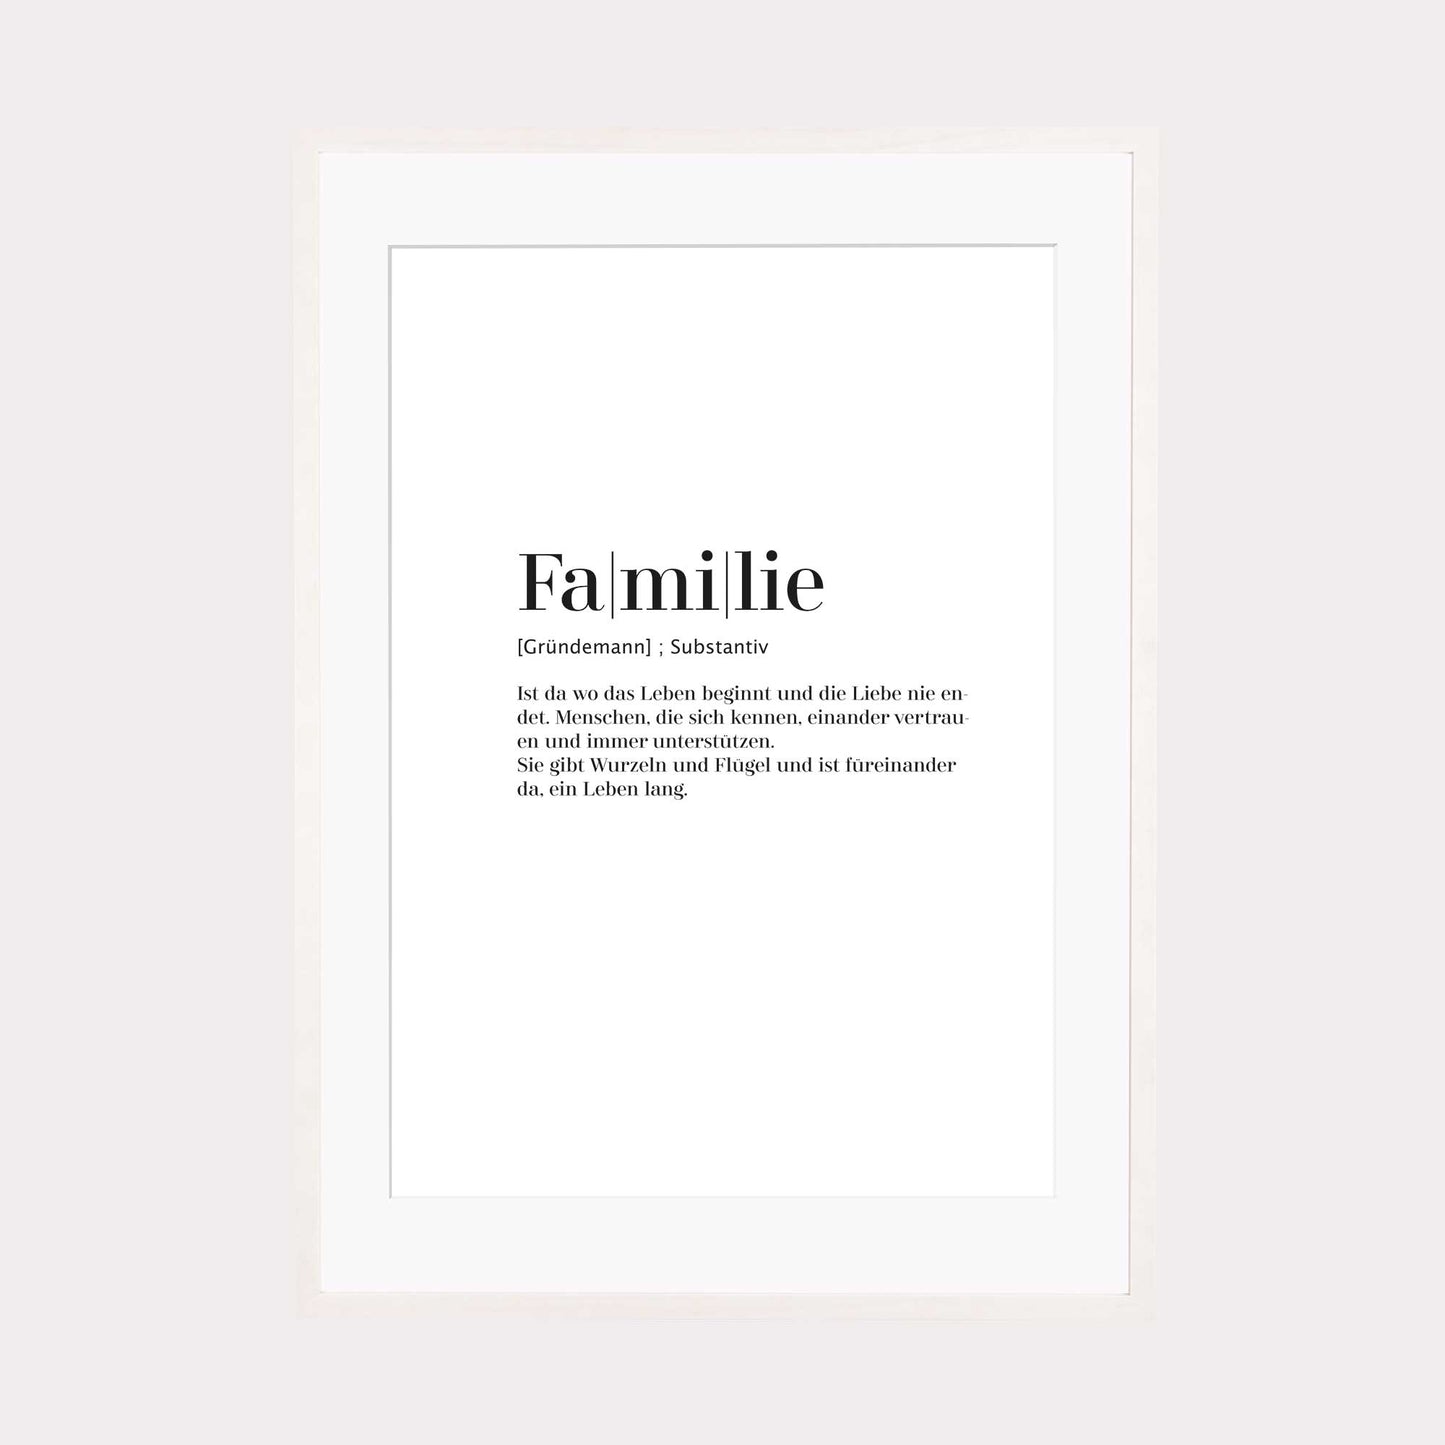 Print personalisierbar | Familie - Worterklärung Definition à la Duden